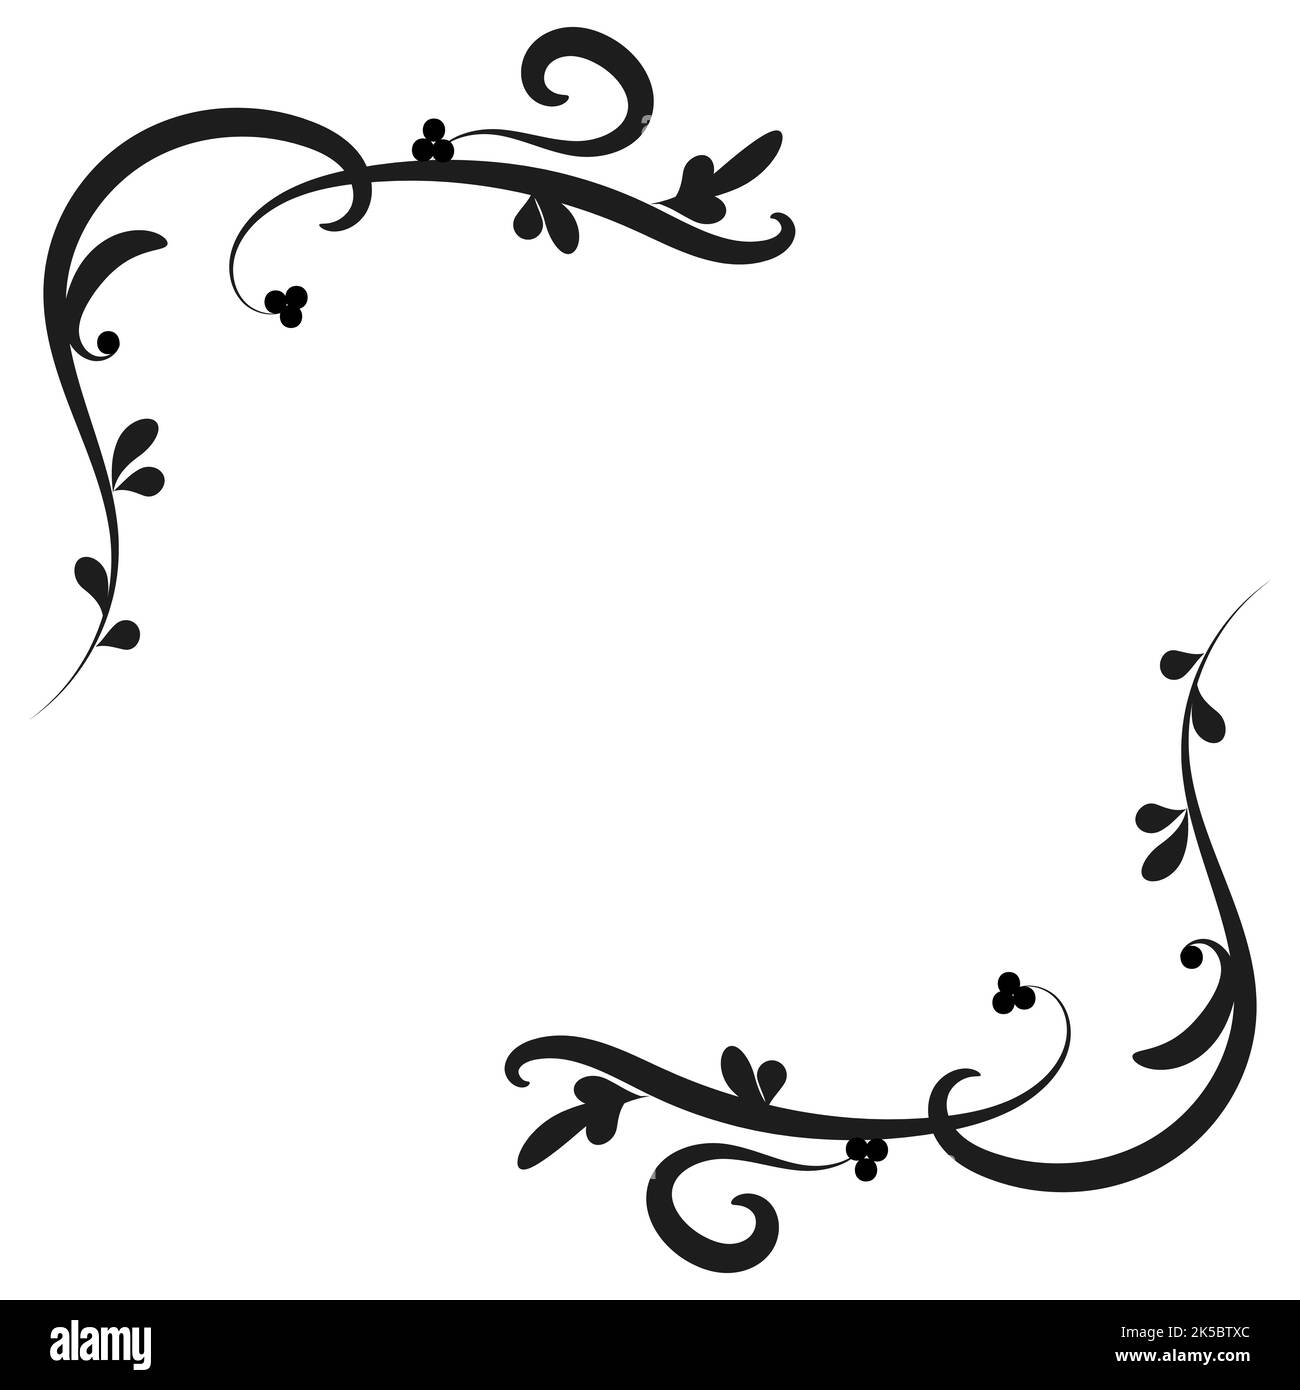 Corner floral ornament. Black corner floral pattern for stencil. Element design. Black and white. Vector illustration. Stock Vector